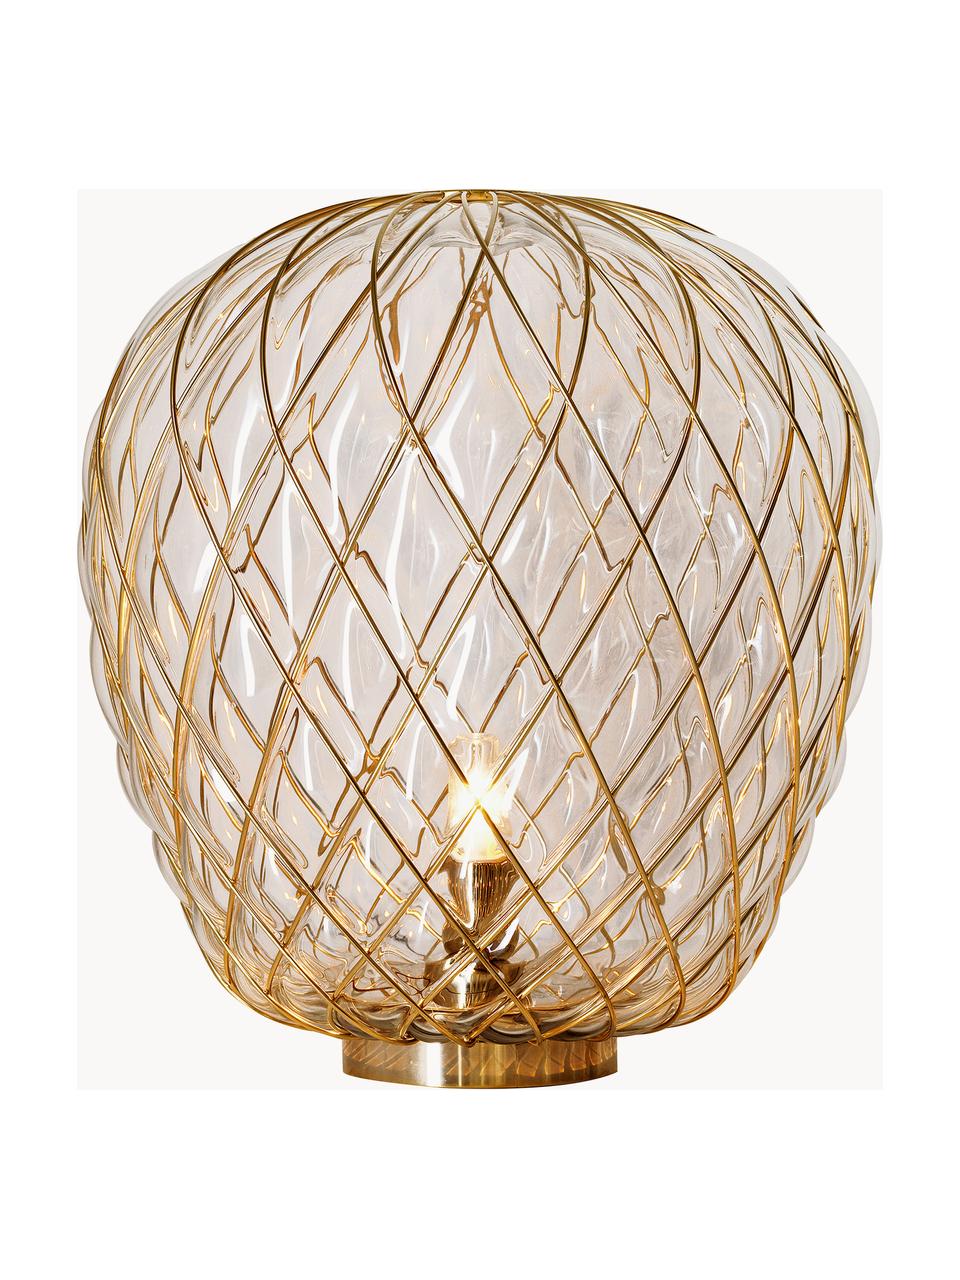 Grote tafellamp Pinecone, handgemaakt, Lampenkap: glas, gegalvaniseerd meta, Transparant, goudkleurig, Ø 50 x H 52 cm